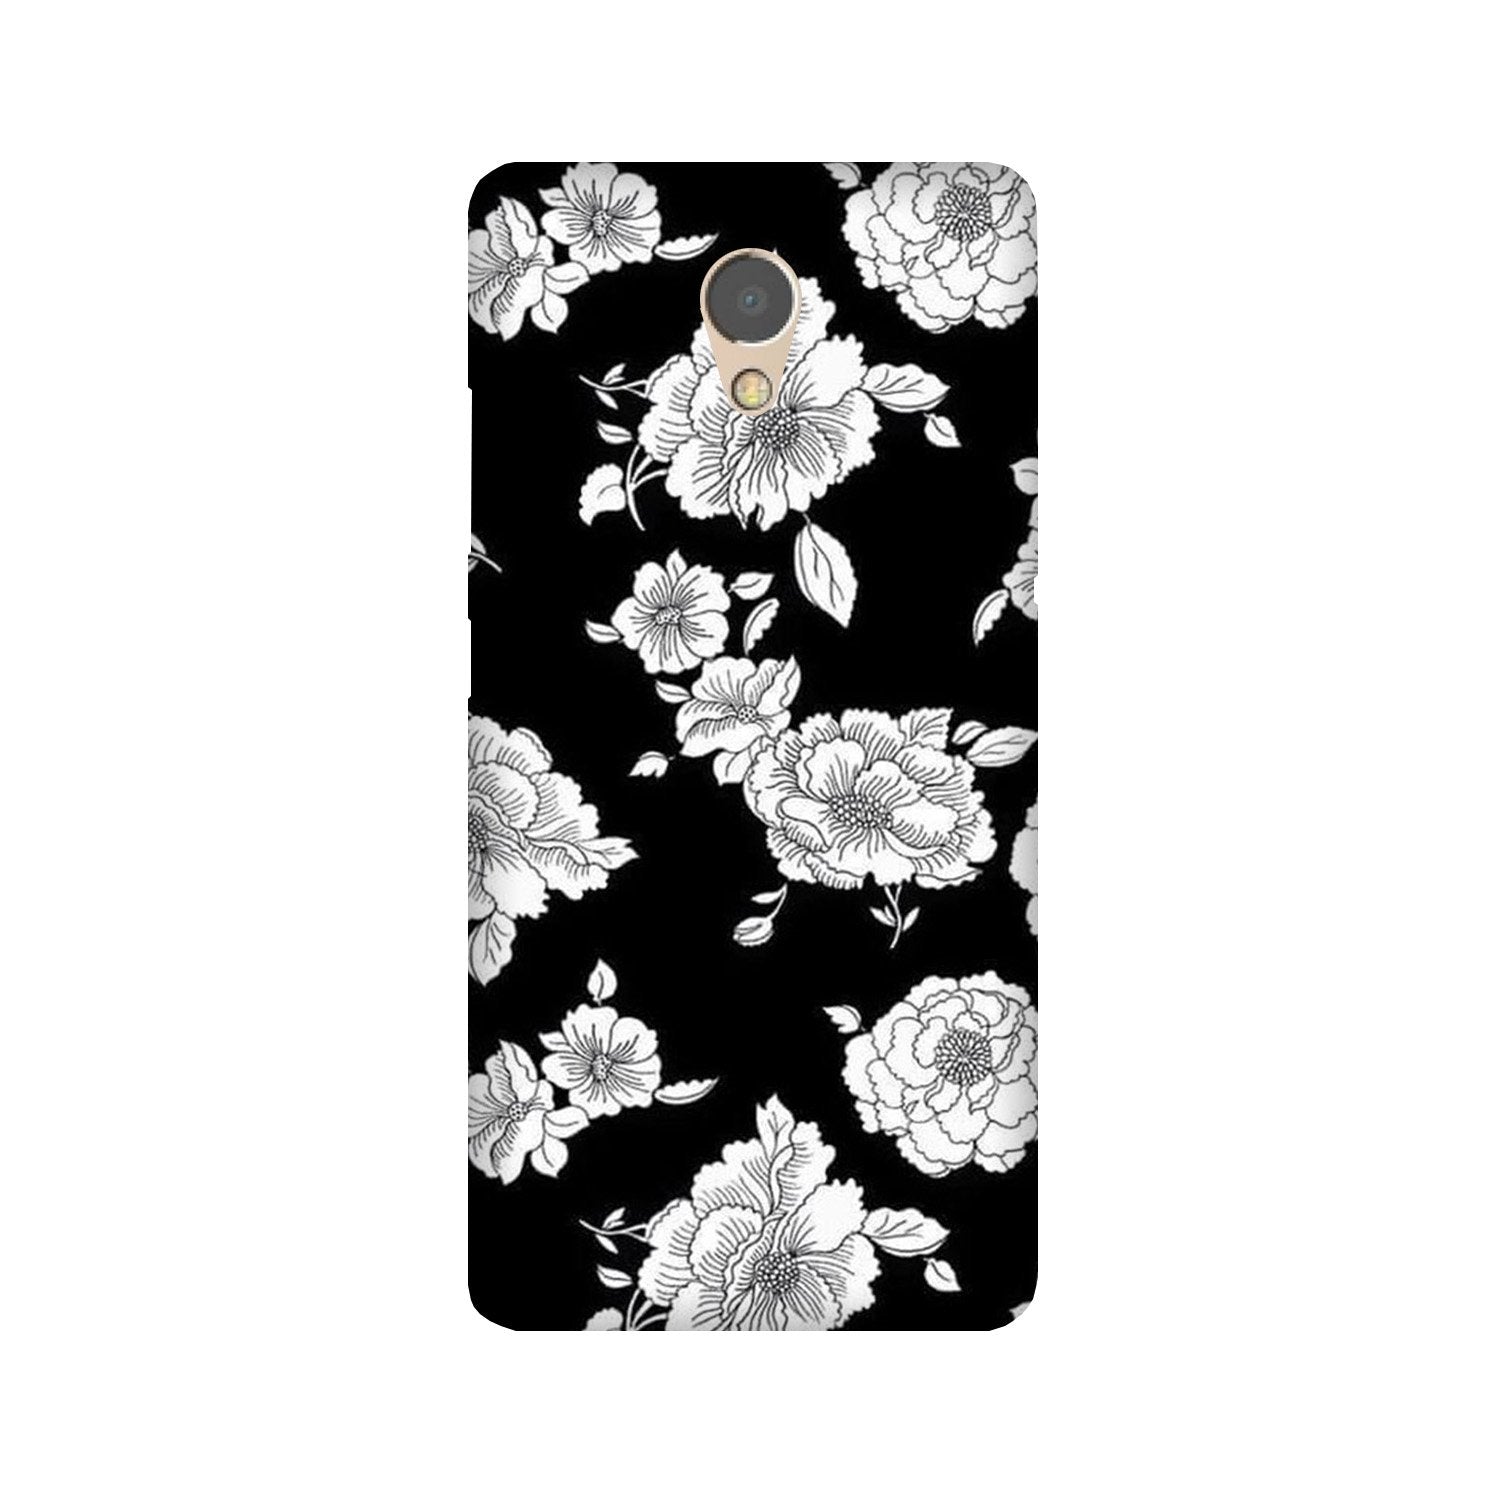 White flowers Black Background Case for Lenovo P2